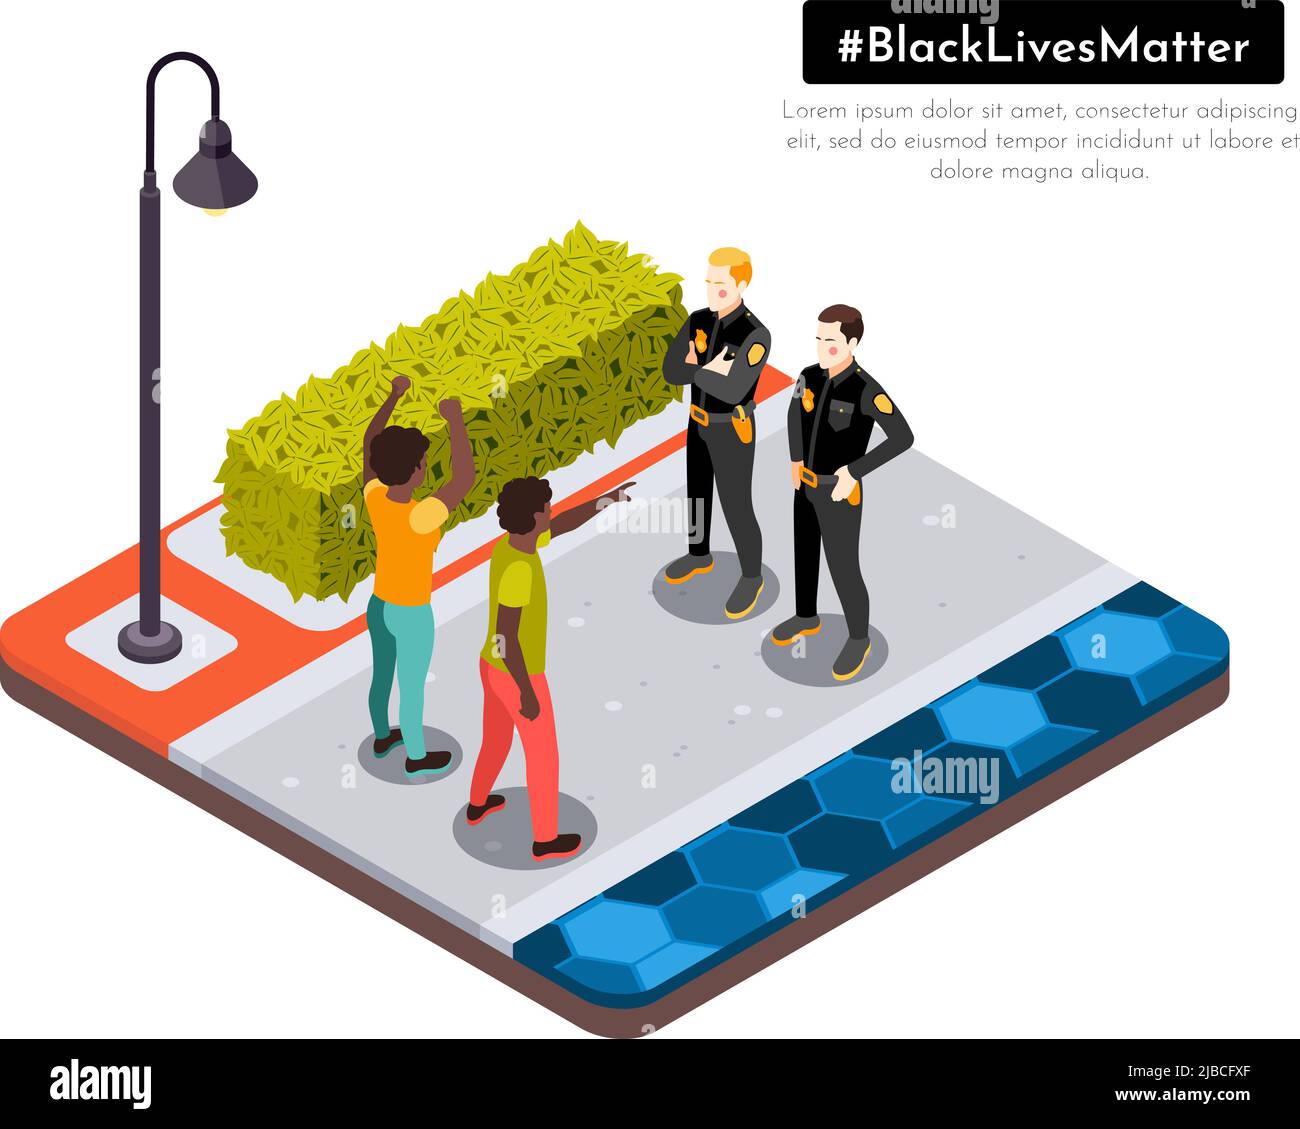 Schwarze Leben Materie Bewegung rassische Ungerechtigkeit Straße Demonstranten konfrontieren Polizei isometrische Hintergrund Zusammensetzung Vektor Illustration Stock Vektor